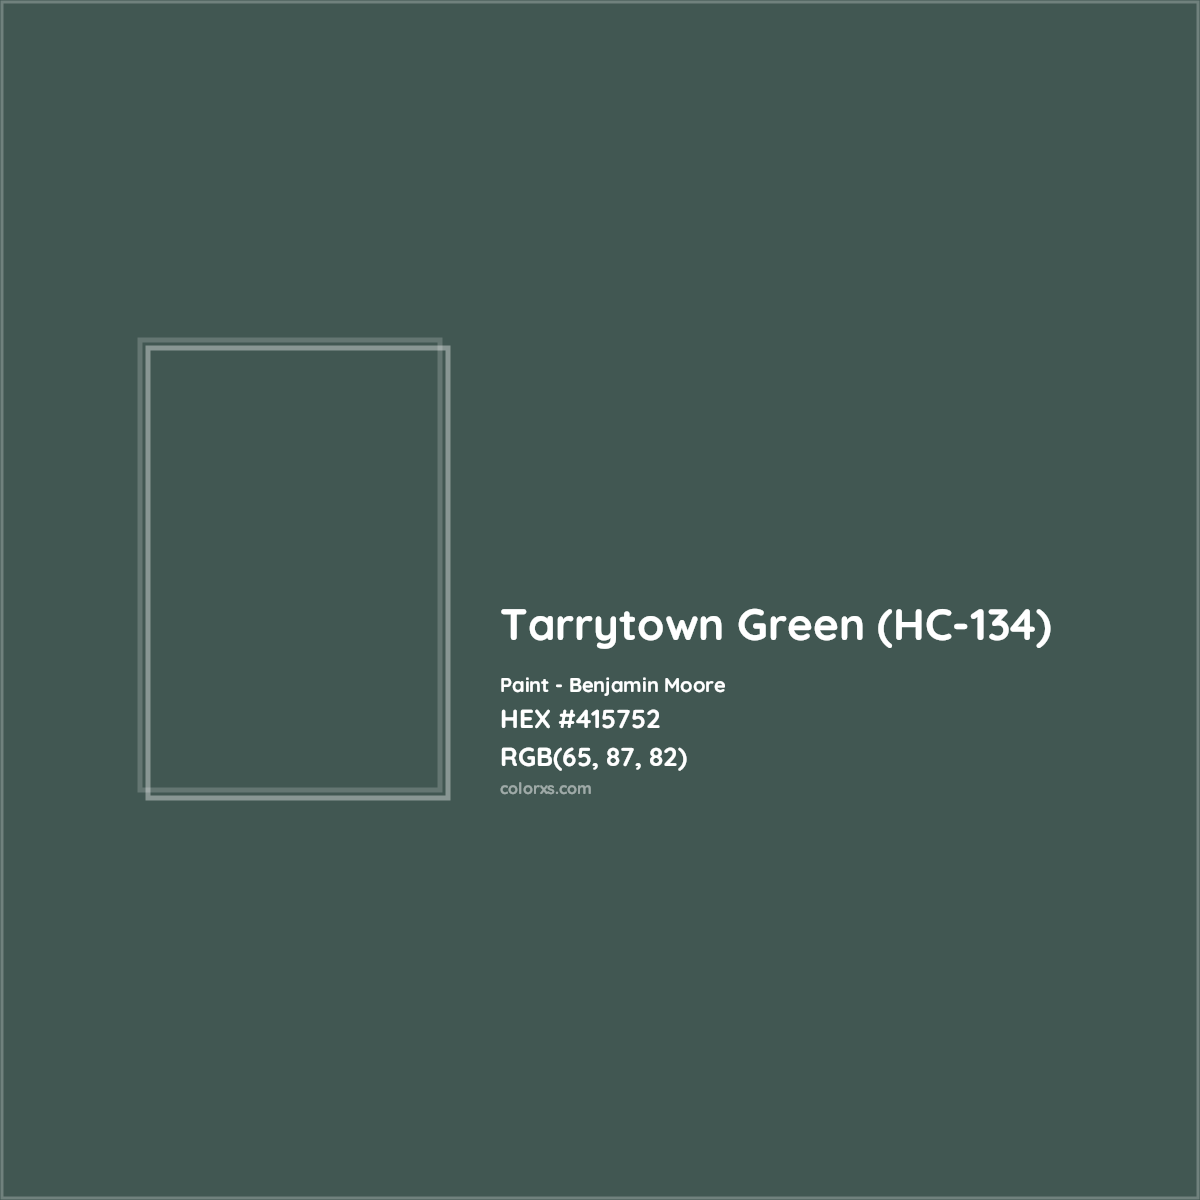 HEX #415752 Tarrytown Green (HC-134) Paint Benjamin Moore - Color Code